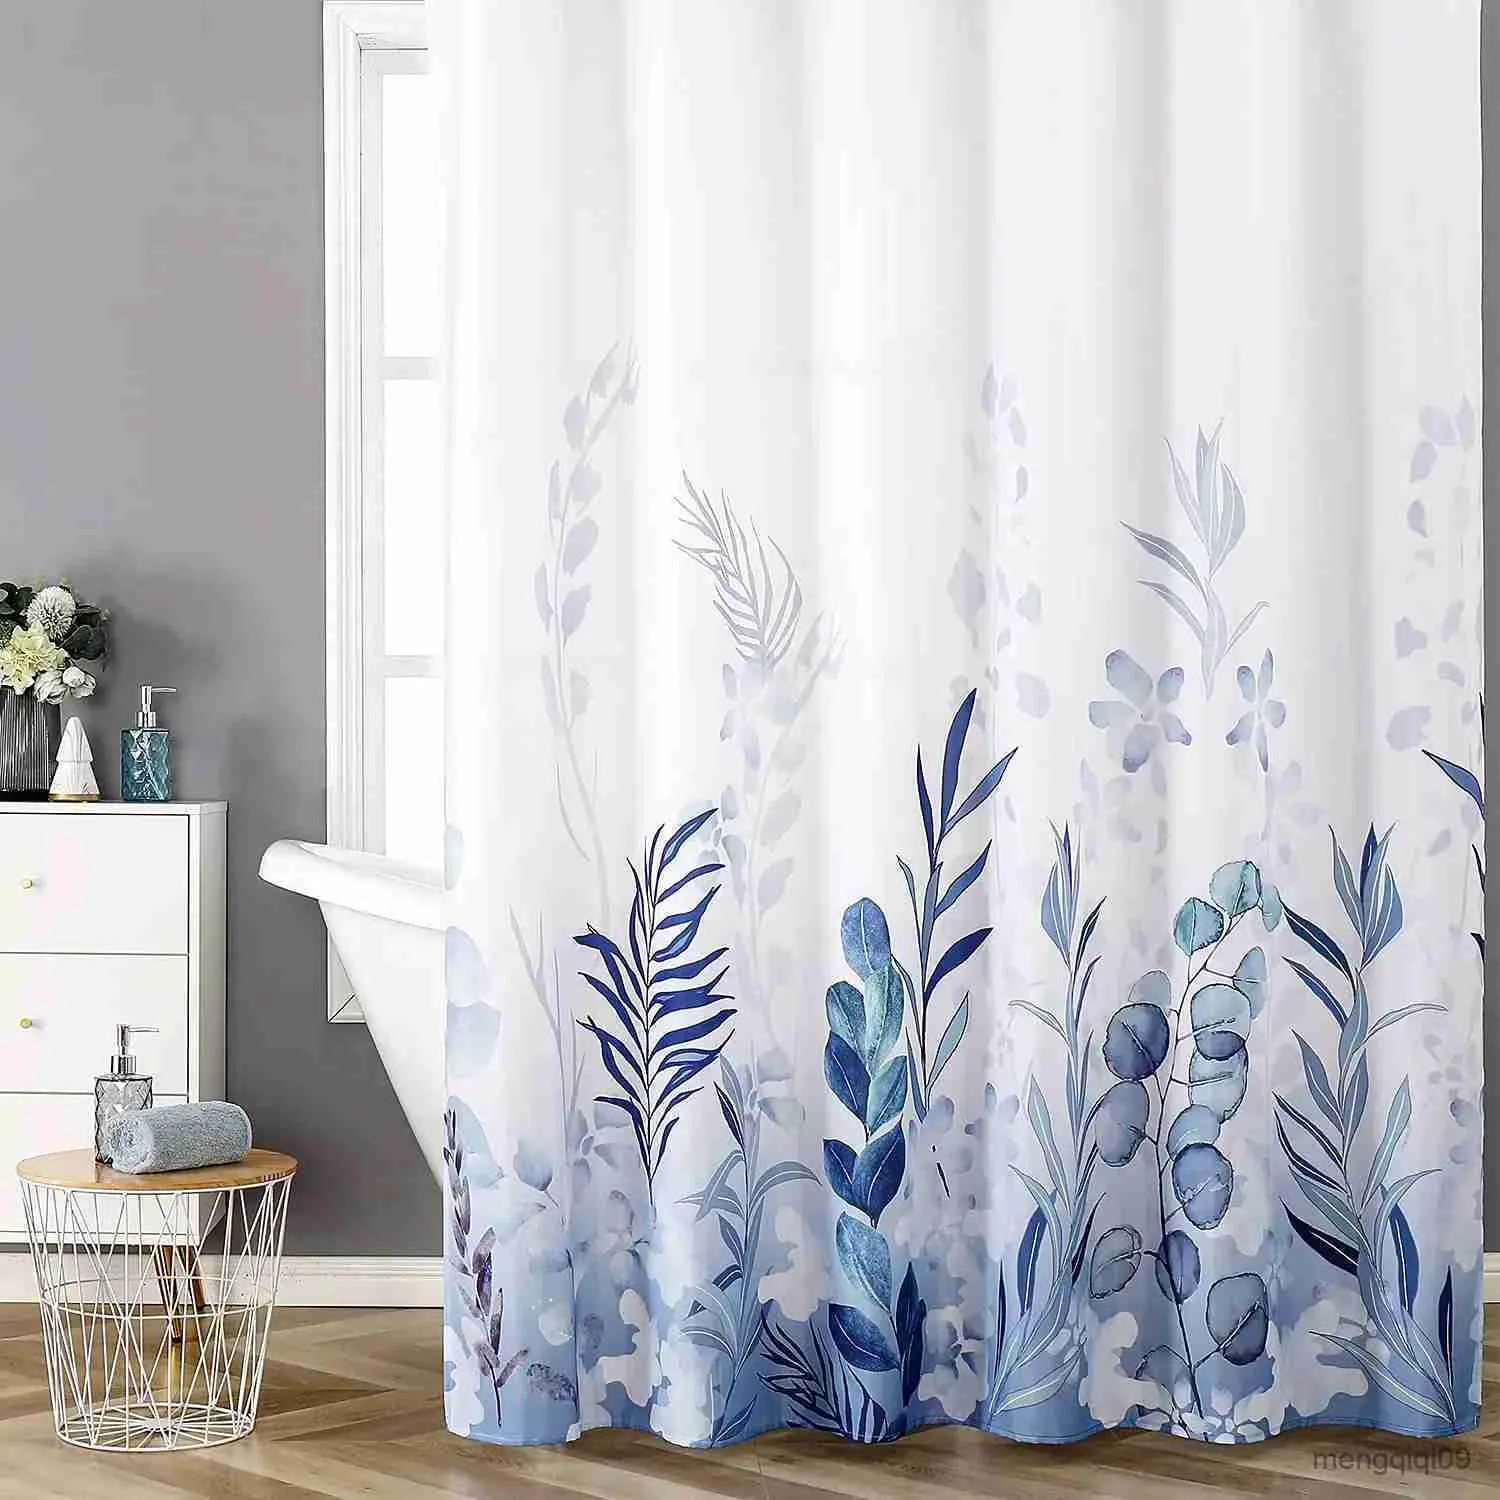 Cortinas de chuveiro azuis pedras de pedra em pano de banheiro branco conjuntos de cortinas de chuveiro com cortinas de chuveiro resistentes para decoração de banheiro R231101